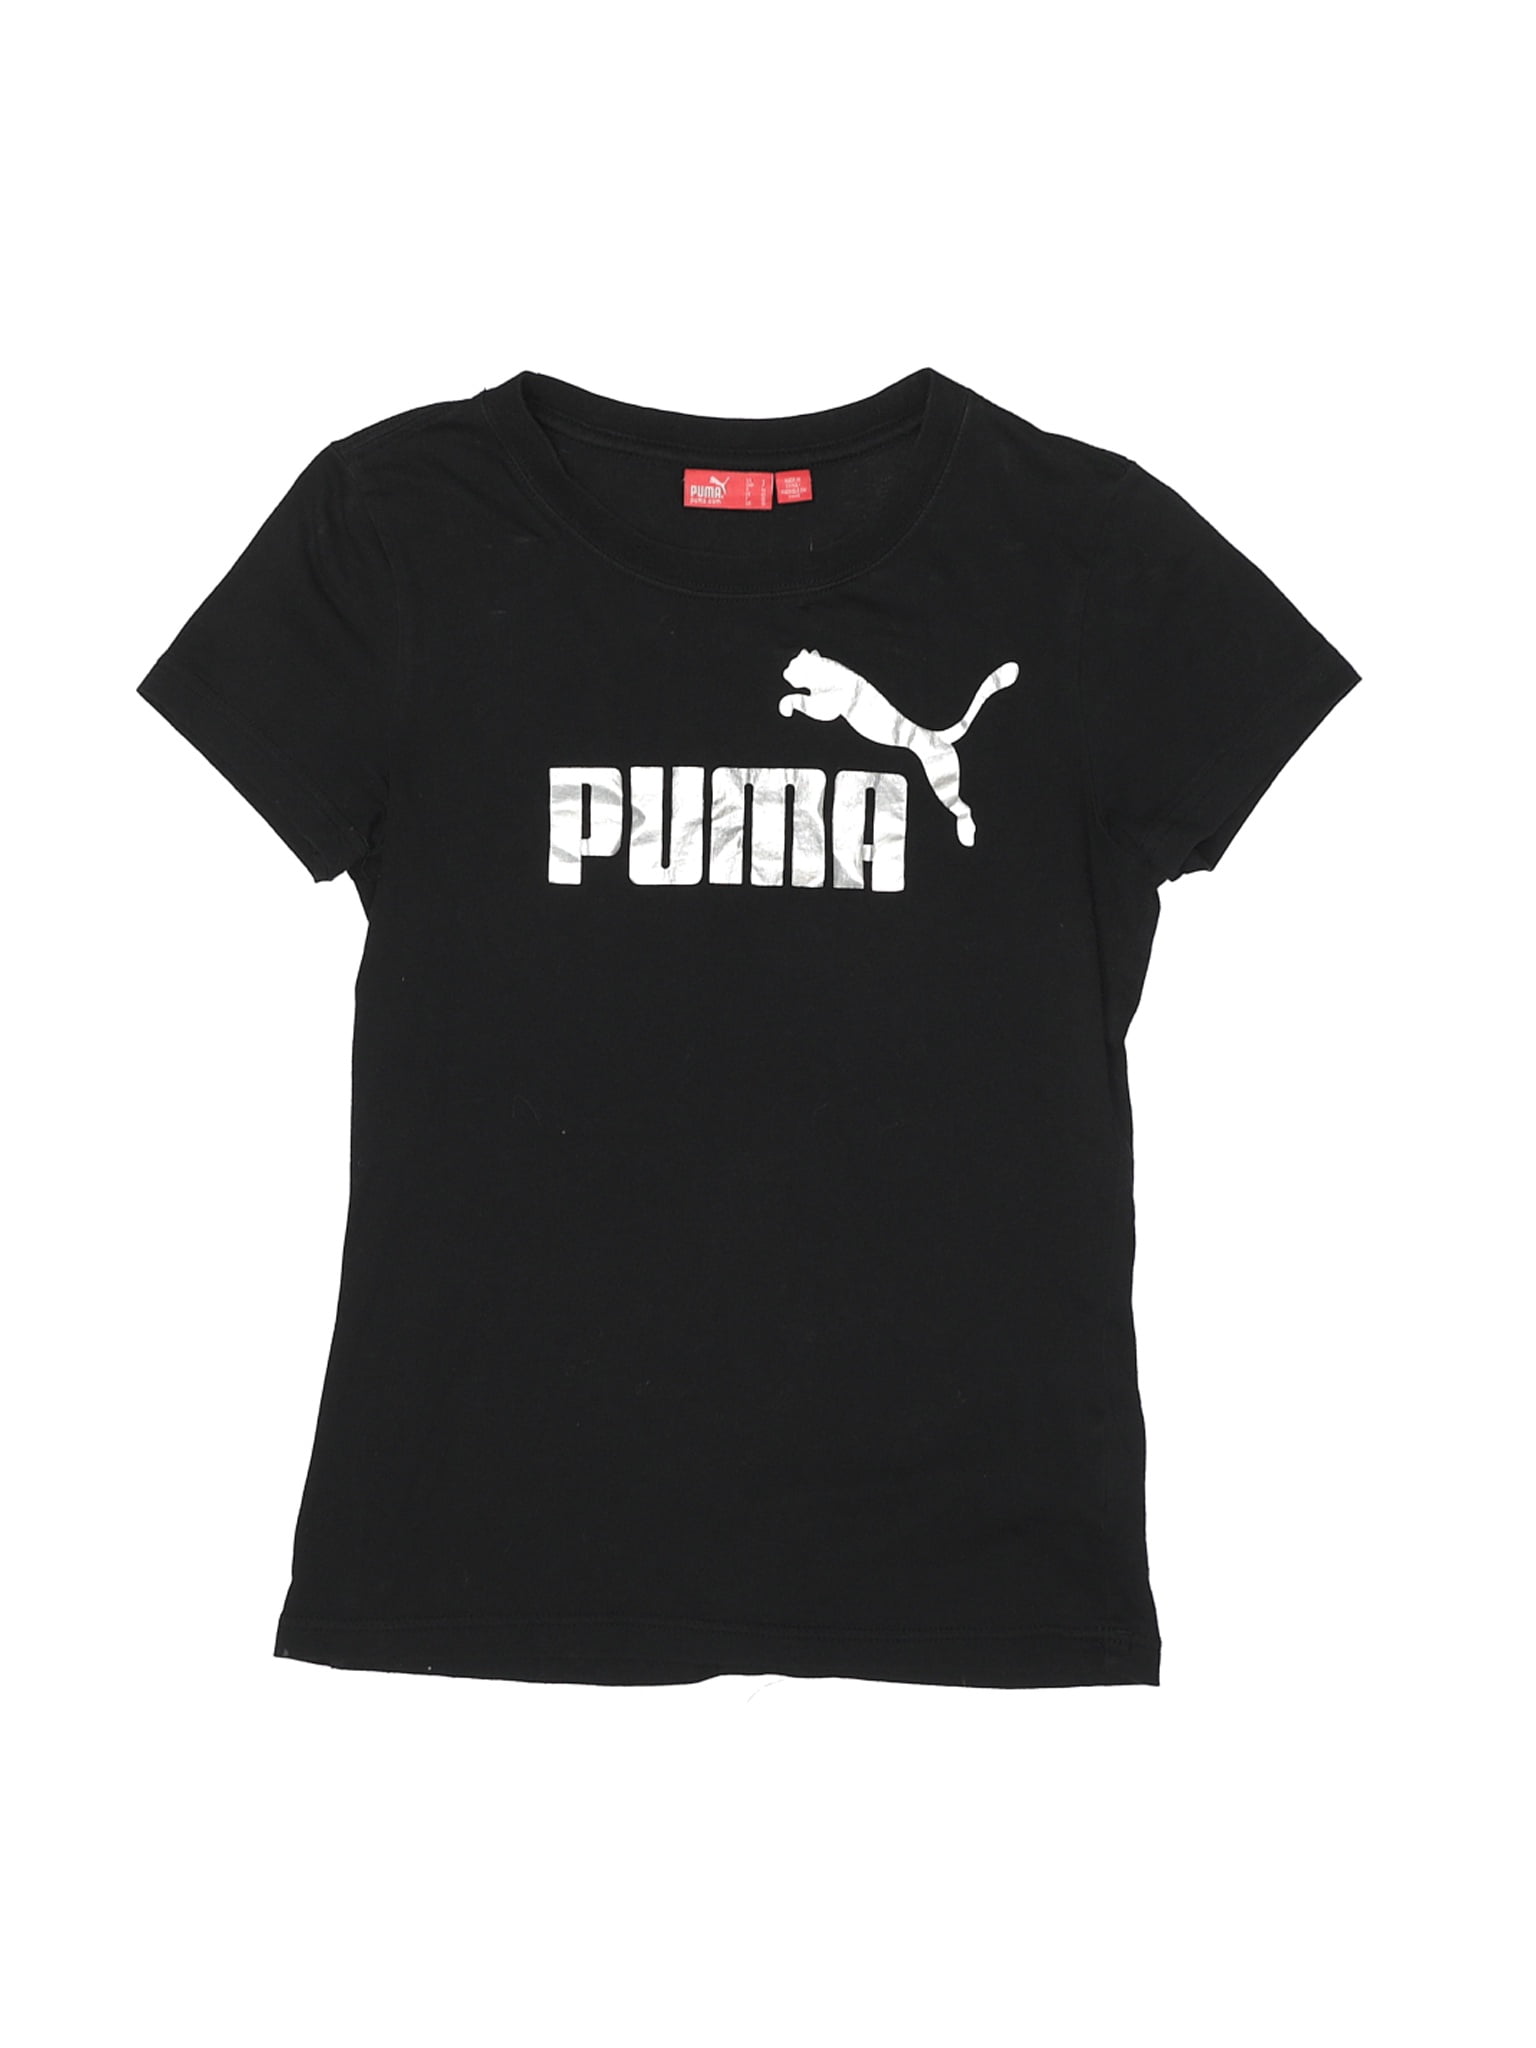 PUMA Womens Tops \u0026 T-Shirts - Walmart.com